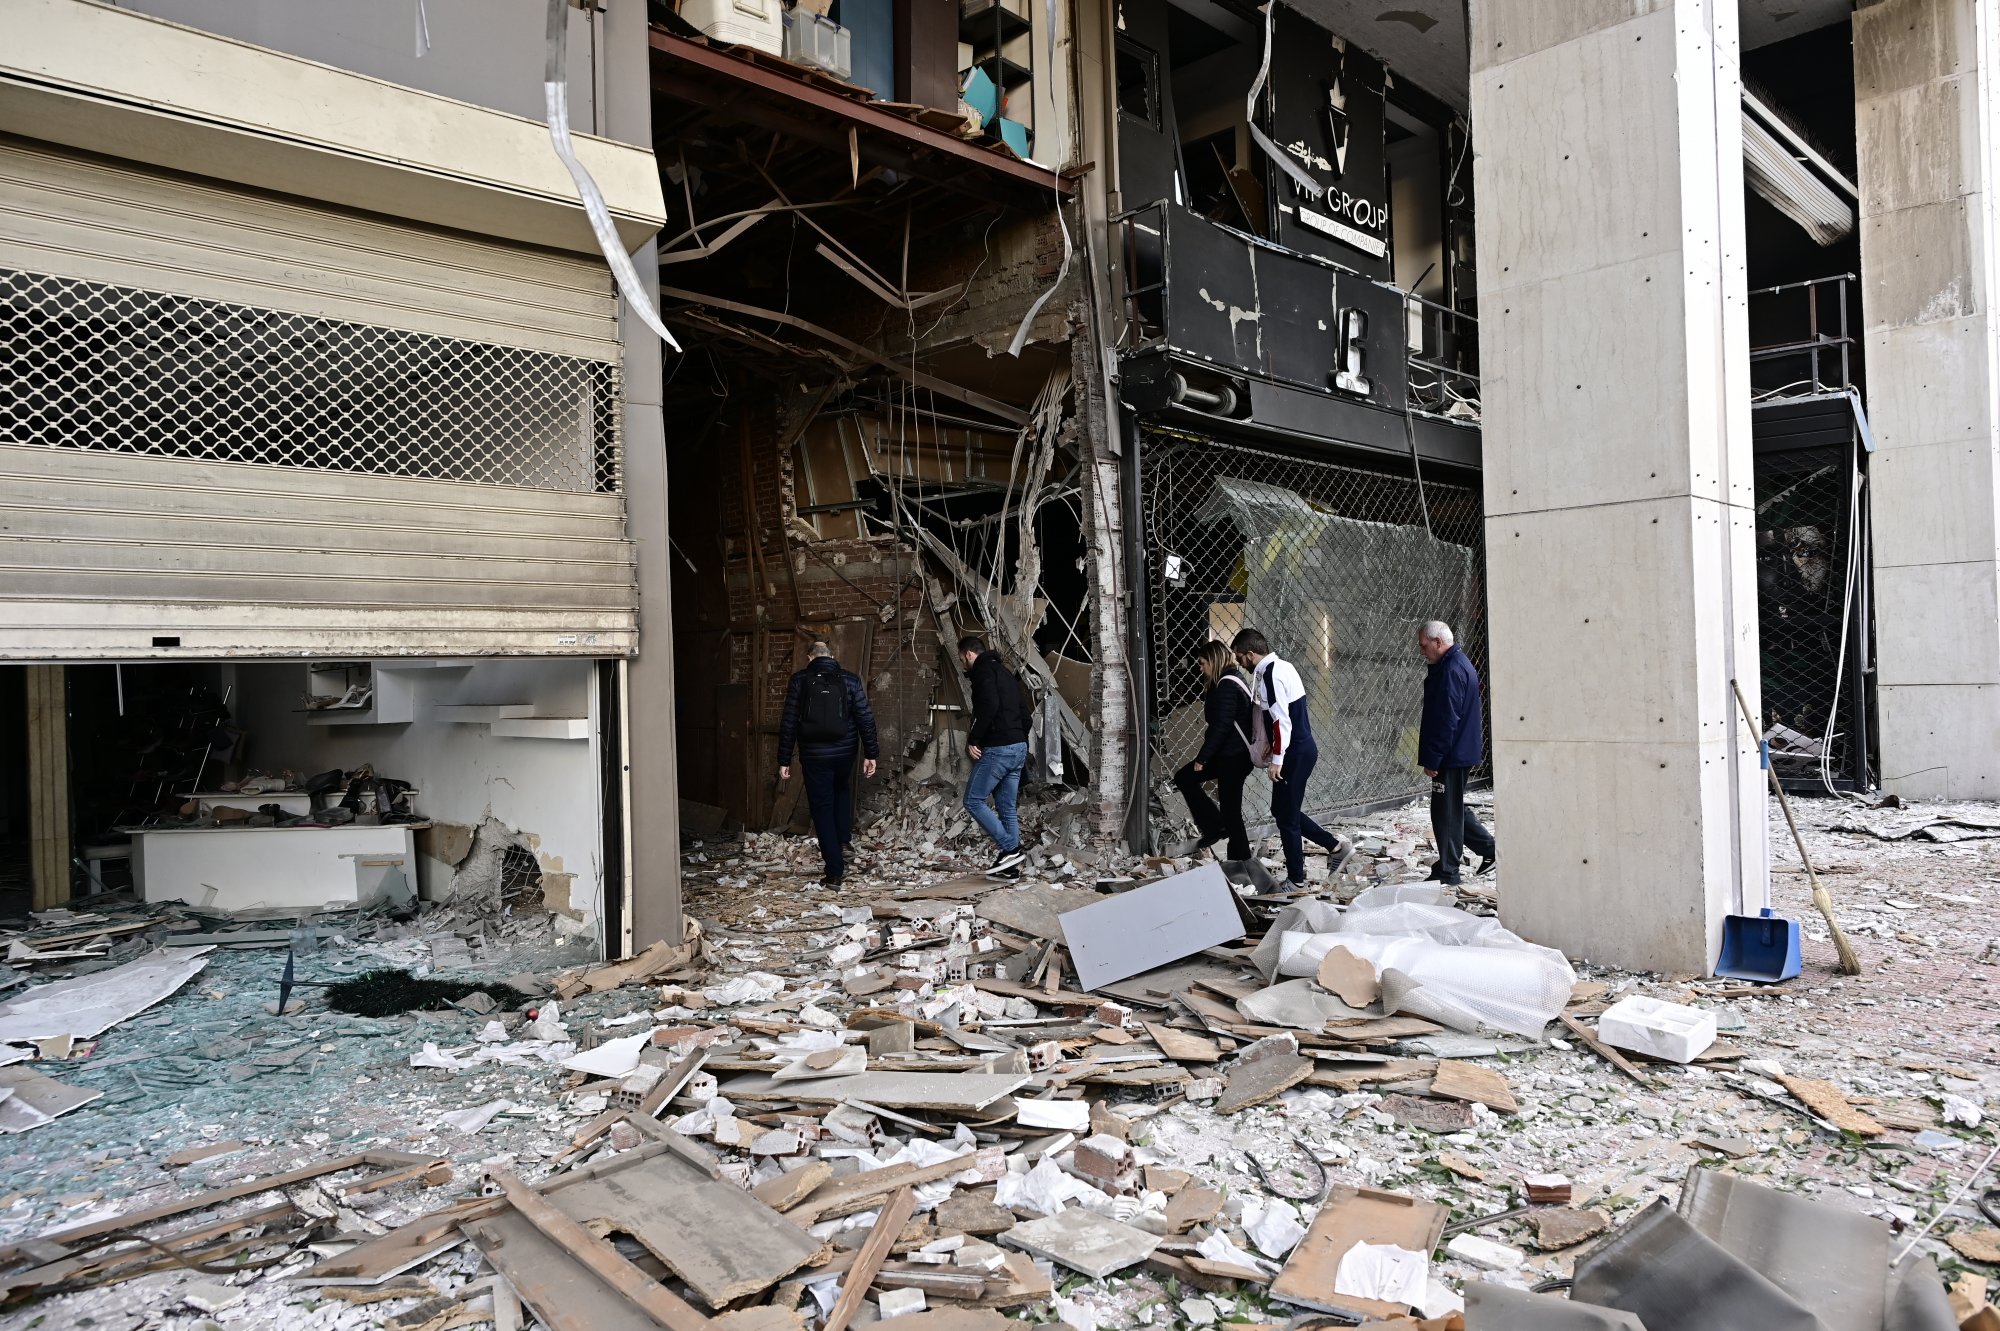 Πειραιάς: Εκτεταμένες ζημιές στον Πειραιά μετά την έκρηξη - «Καταστροφή» λέει ιδιοκτήτρια καταστήματος